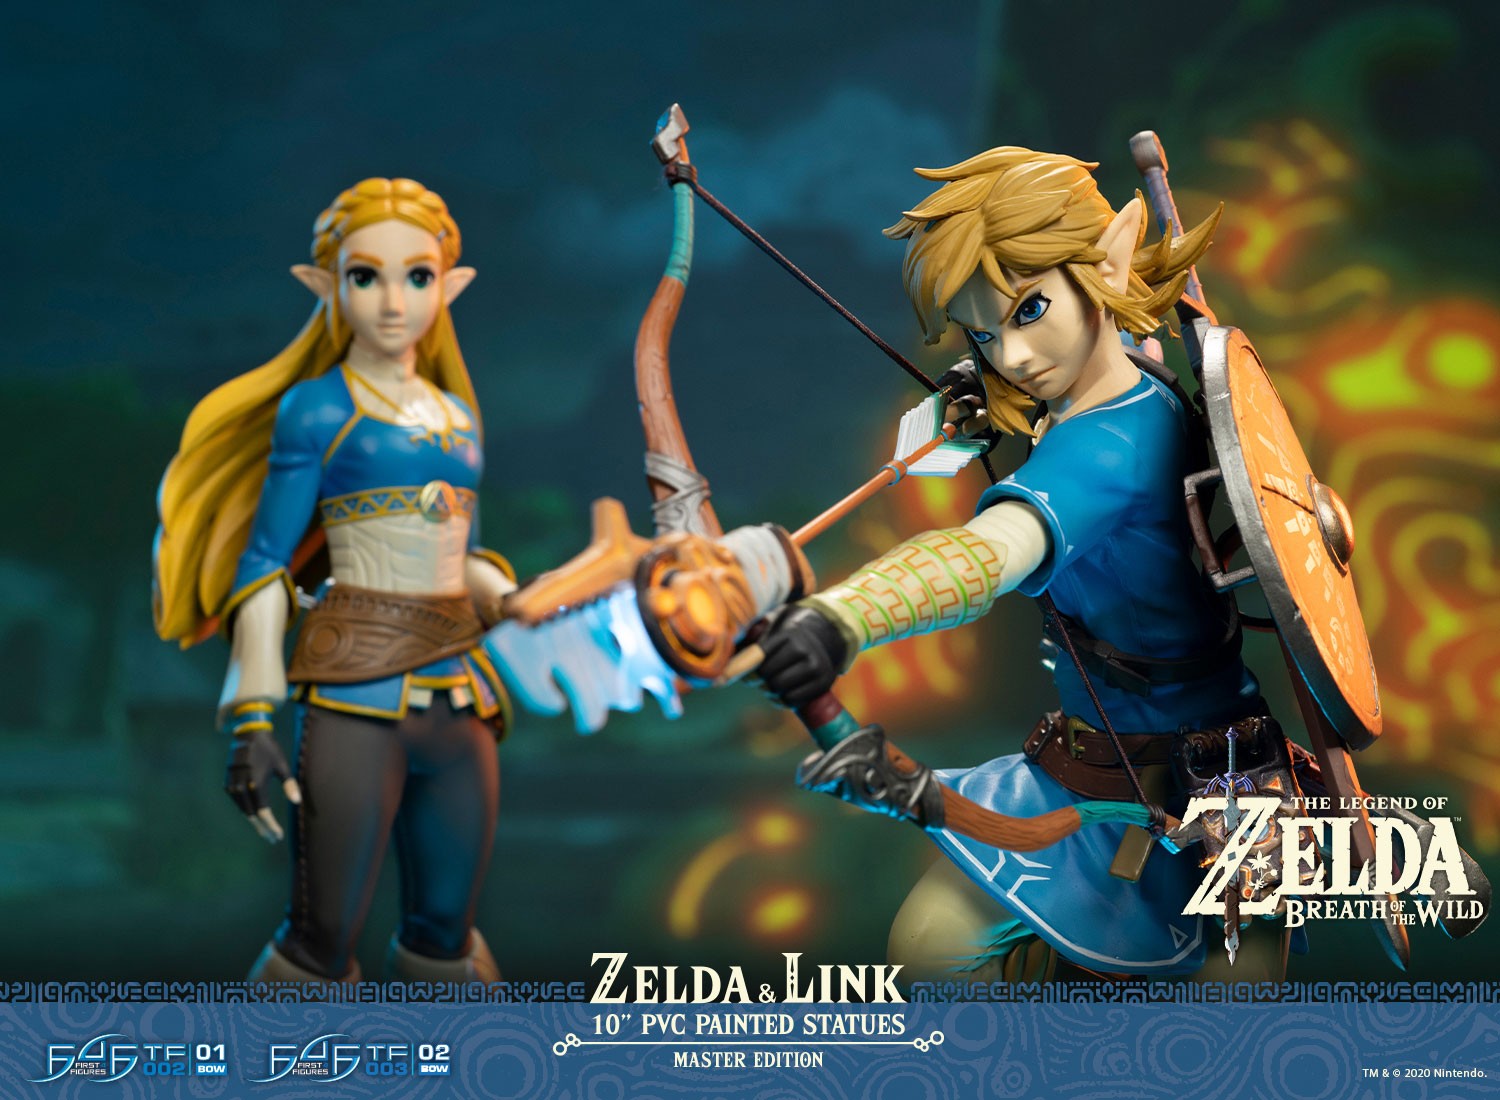 Zelda The Legend of Zelda Breath of The Wild 4 Nintendo Action Figure